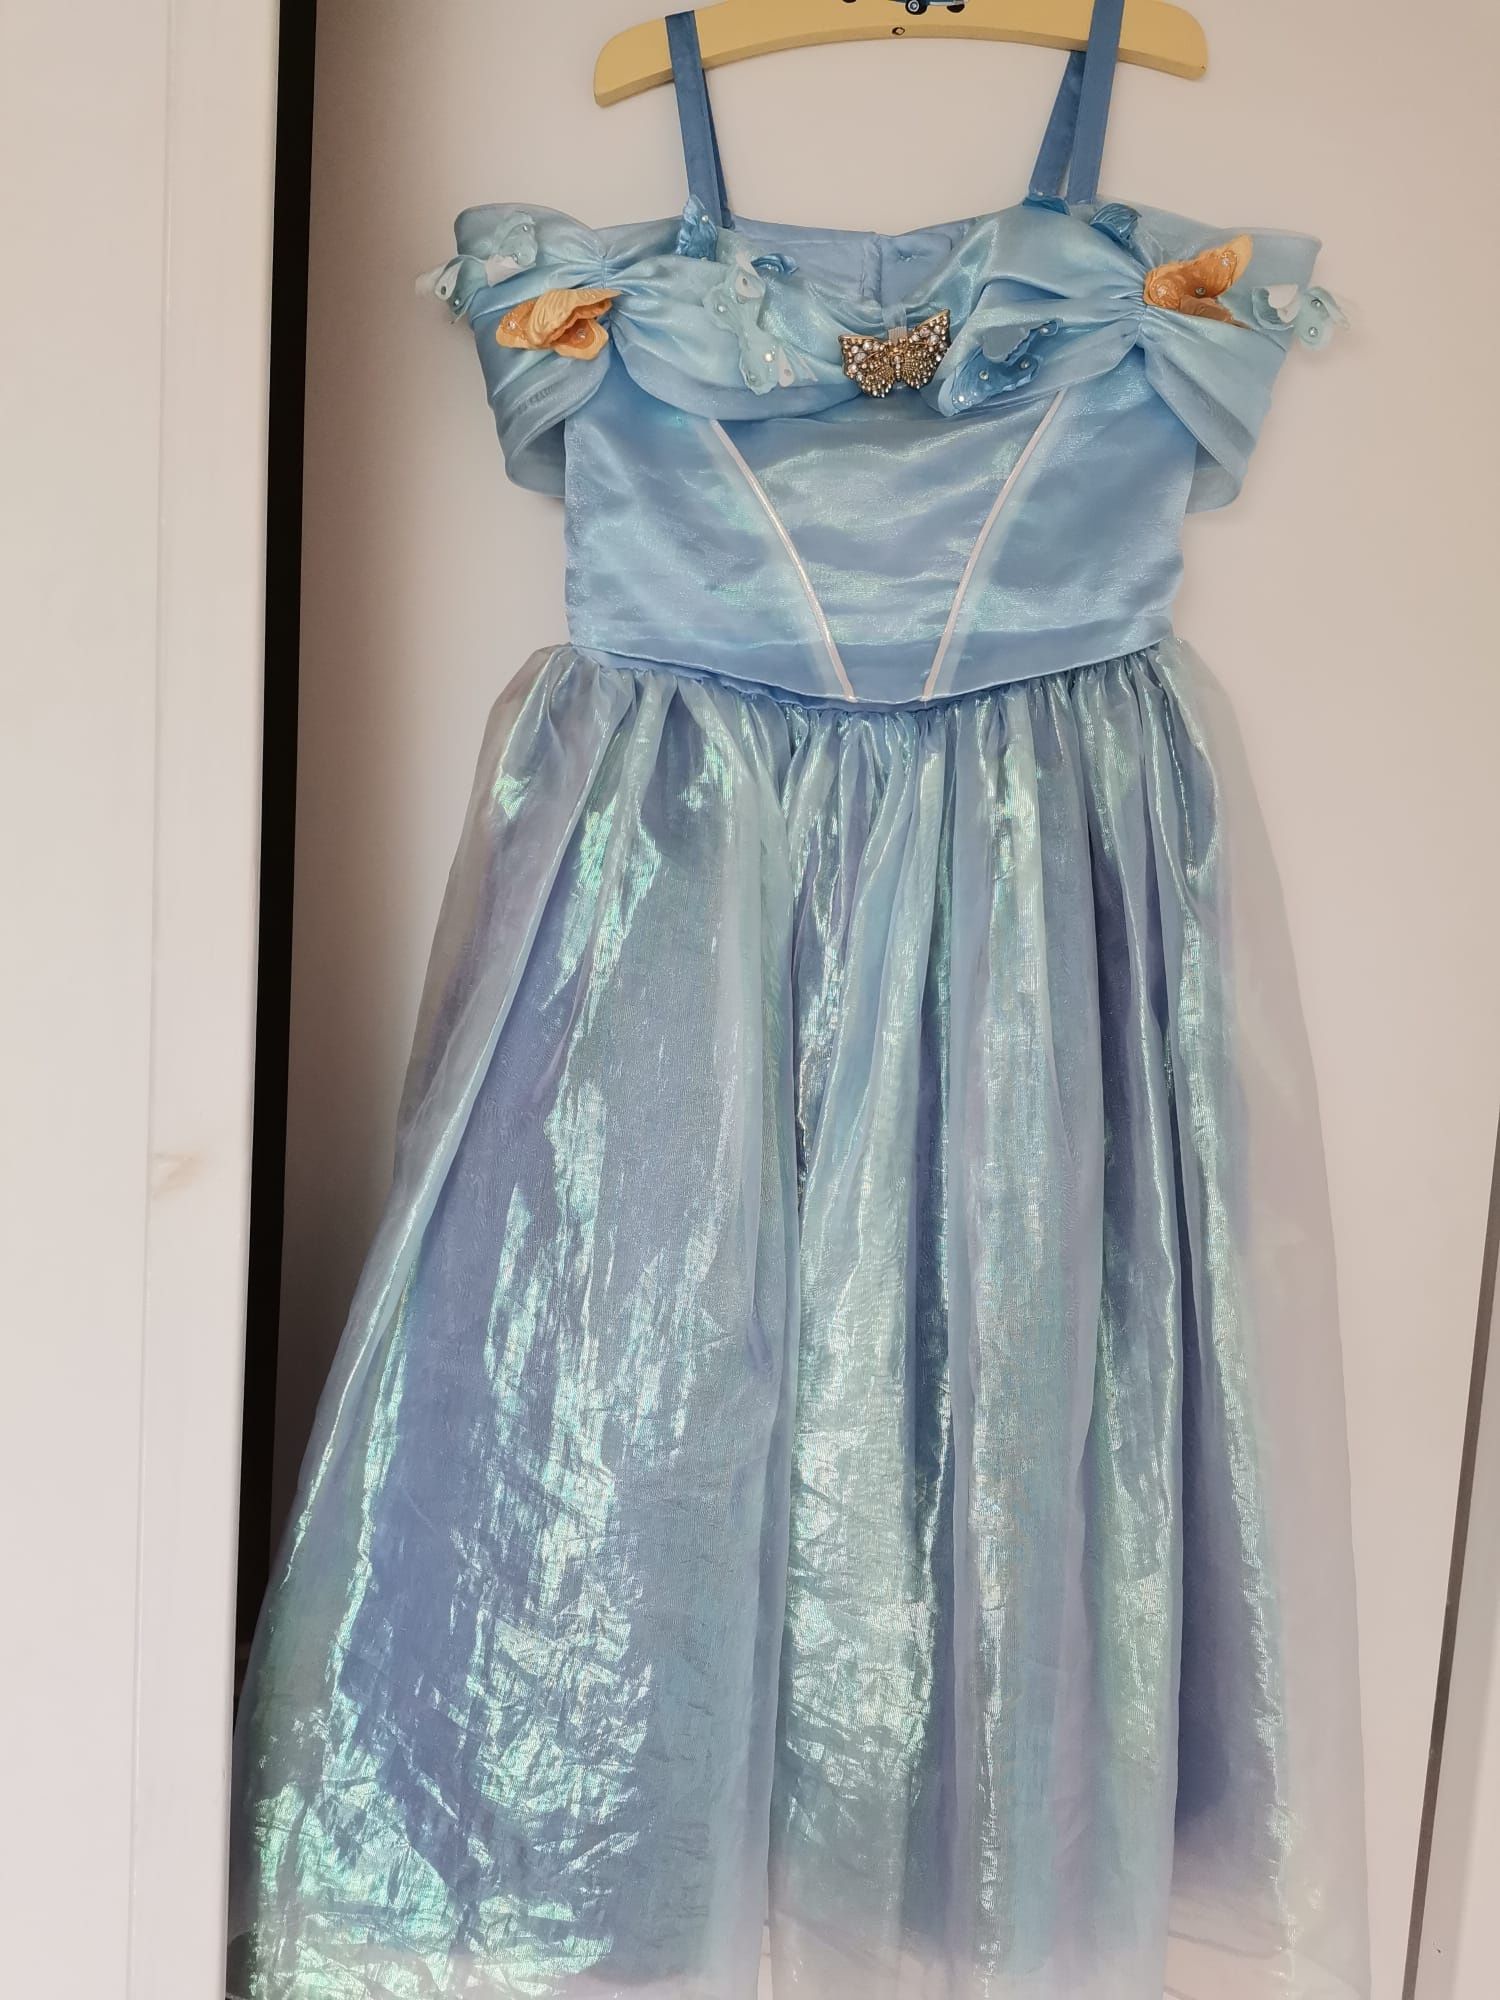 Vestido fantasia carnaval Disney Cinderella. Tamanho 5/6.Óptimo estado